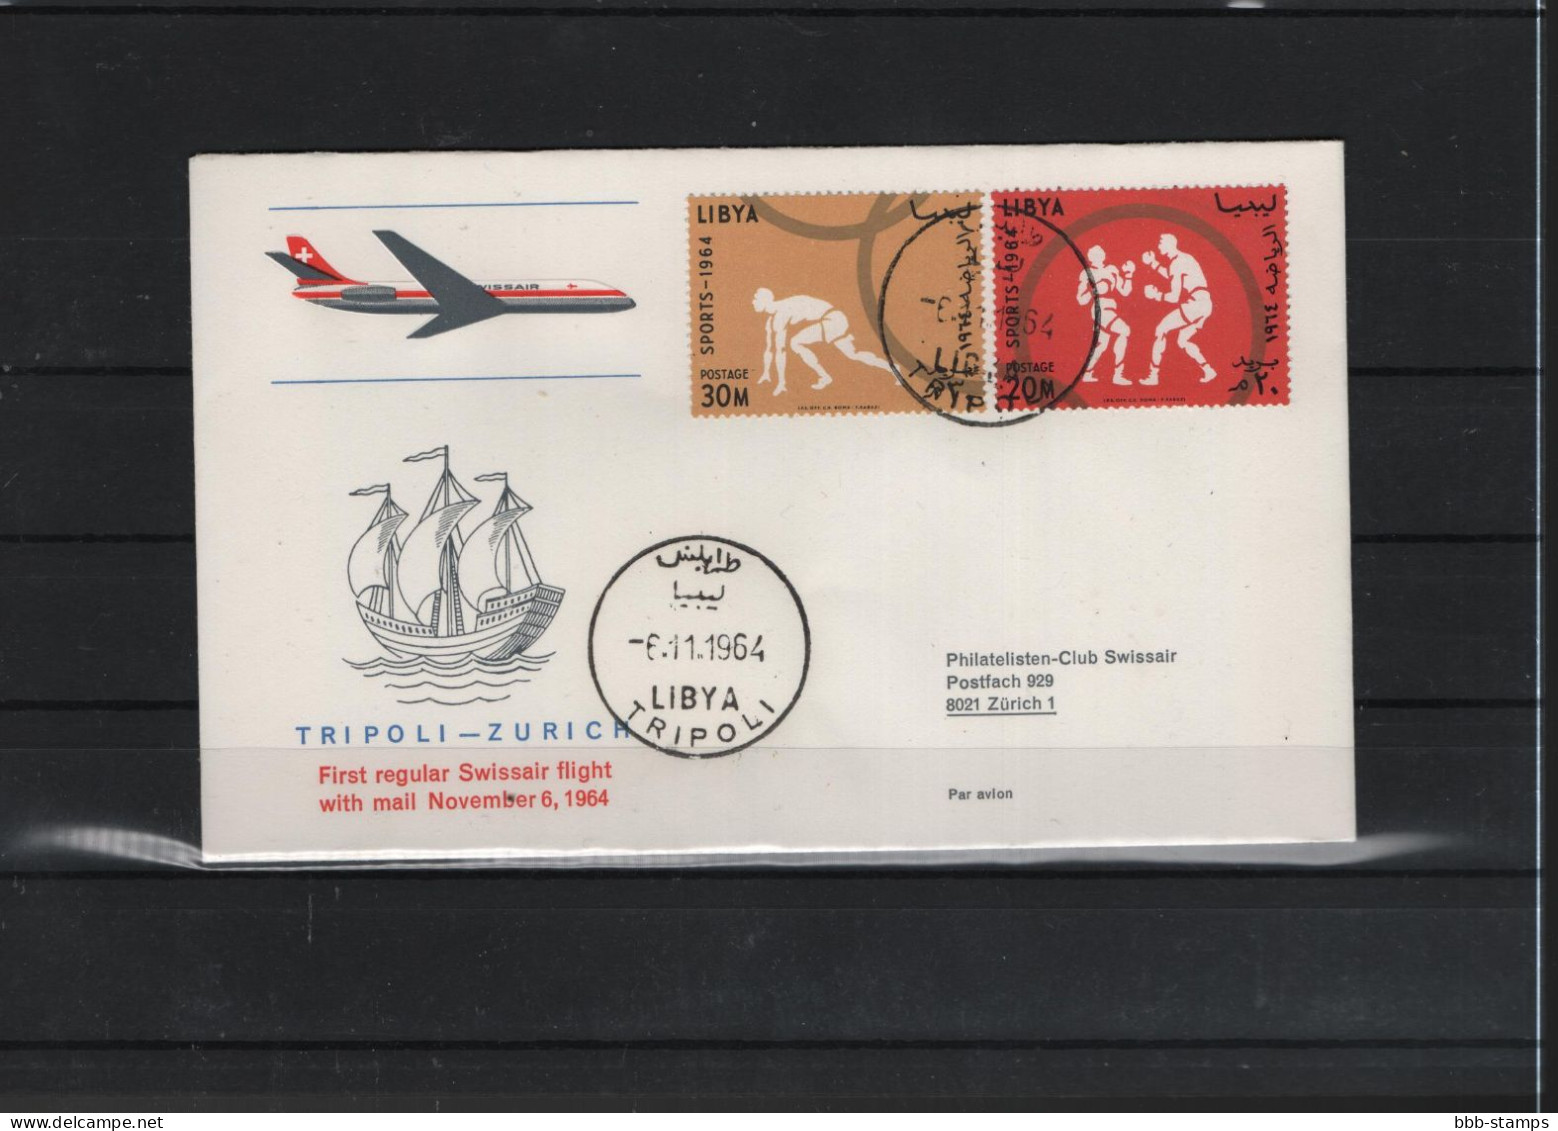 Schweiz Air Mail Swissair  FFC  5.11.1964 Tripoli - Zürich - Primeros Vuelos